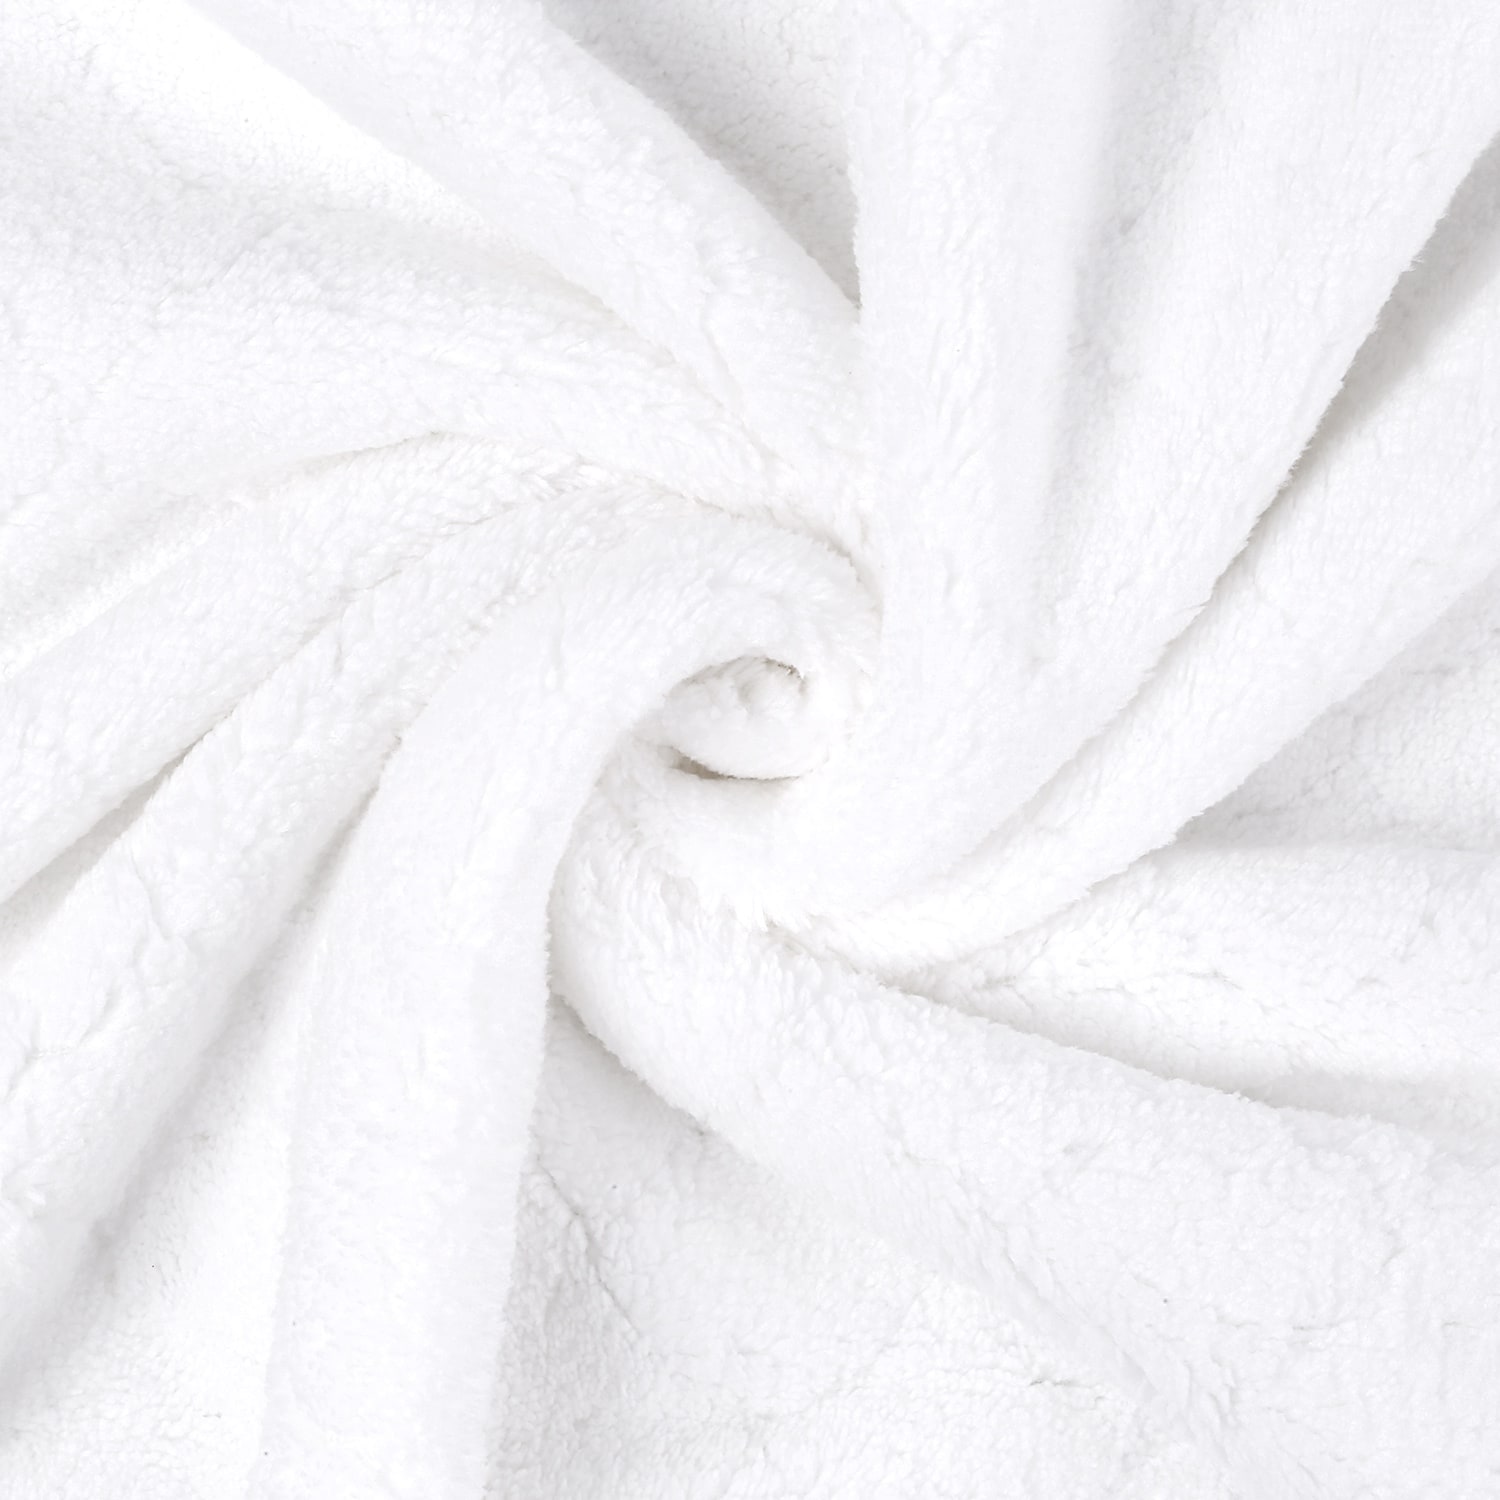 Velvet Bath Towels & Washcloths for sale